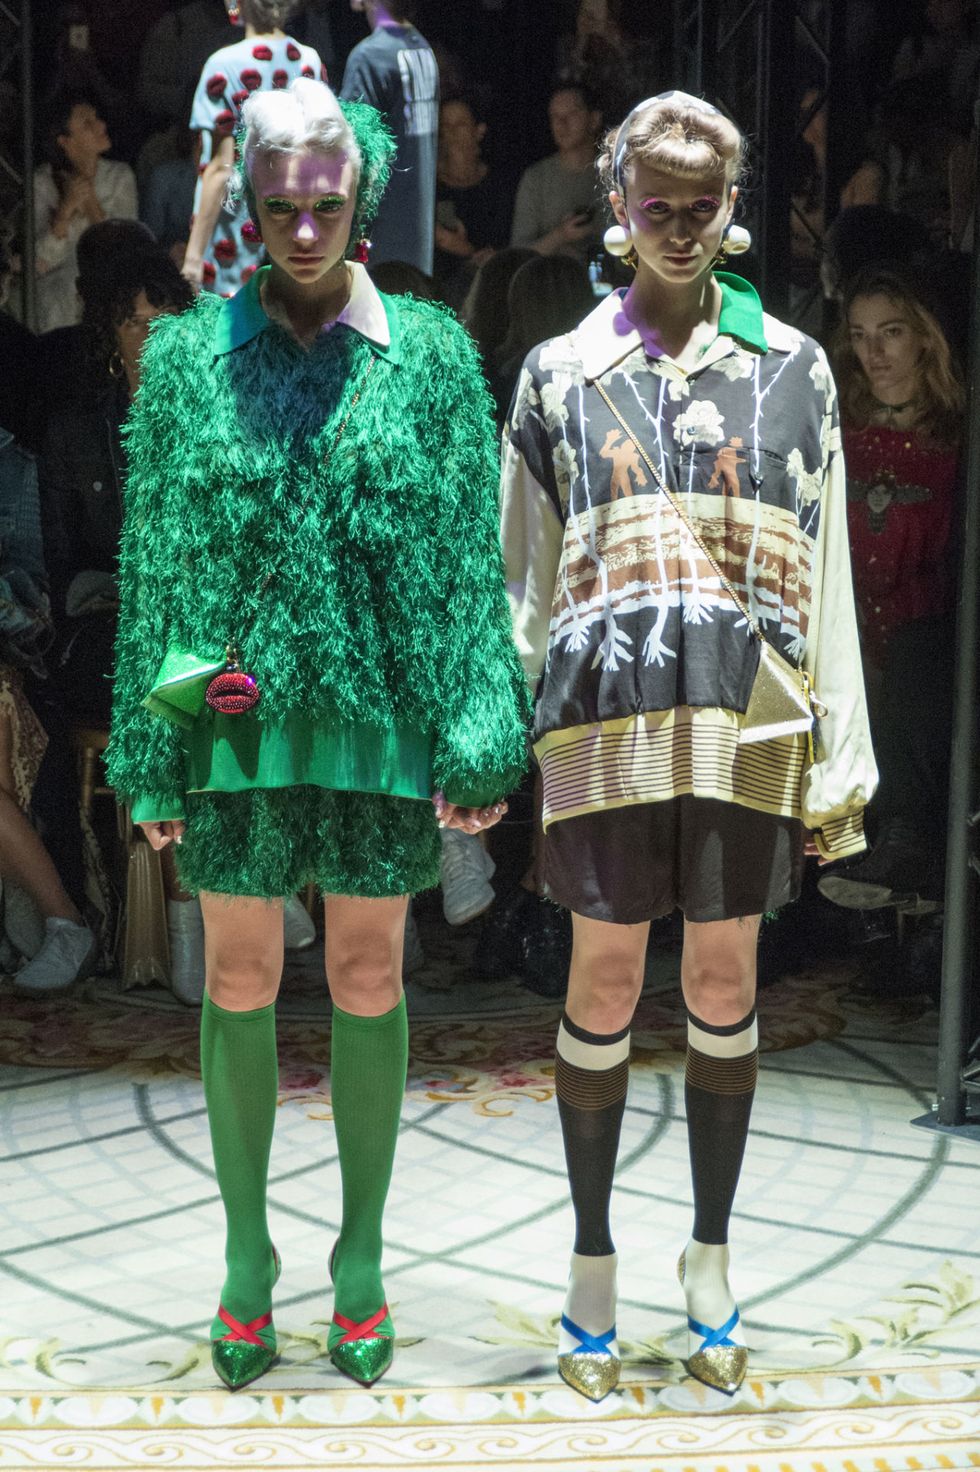 Parigi è già in mood Halloween: il brand Undercover presenta la nuova collezione primavera estate 2018 dove le modelle sfilano in coppia tenendosi per mano, proprio come le gemelle di Shining.